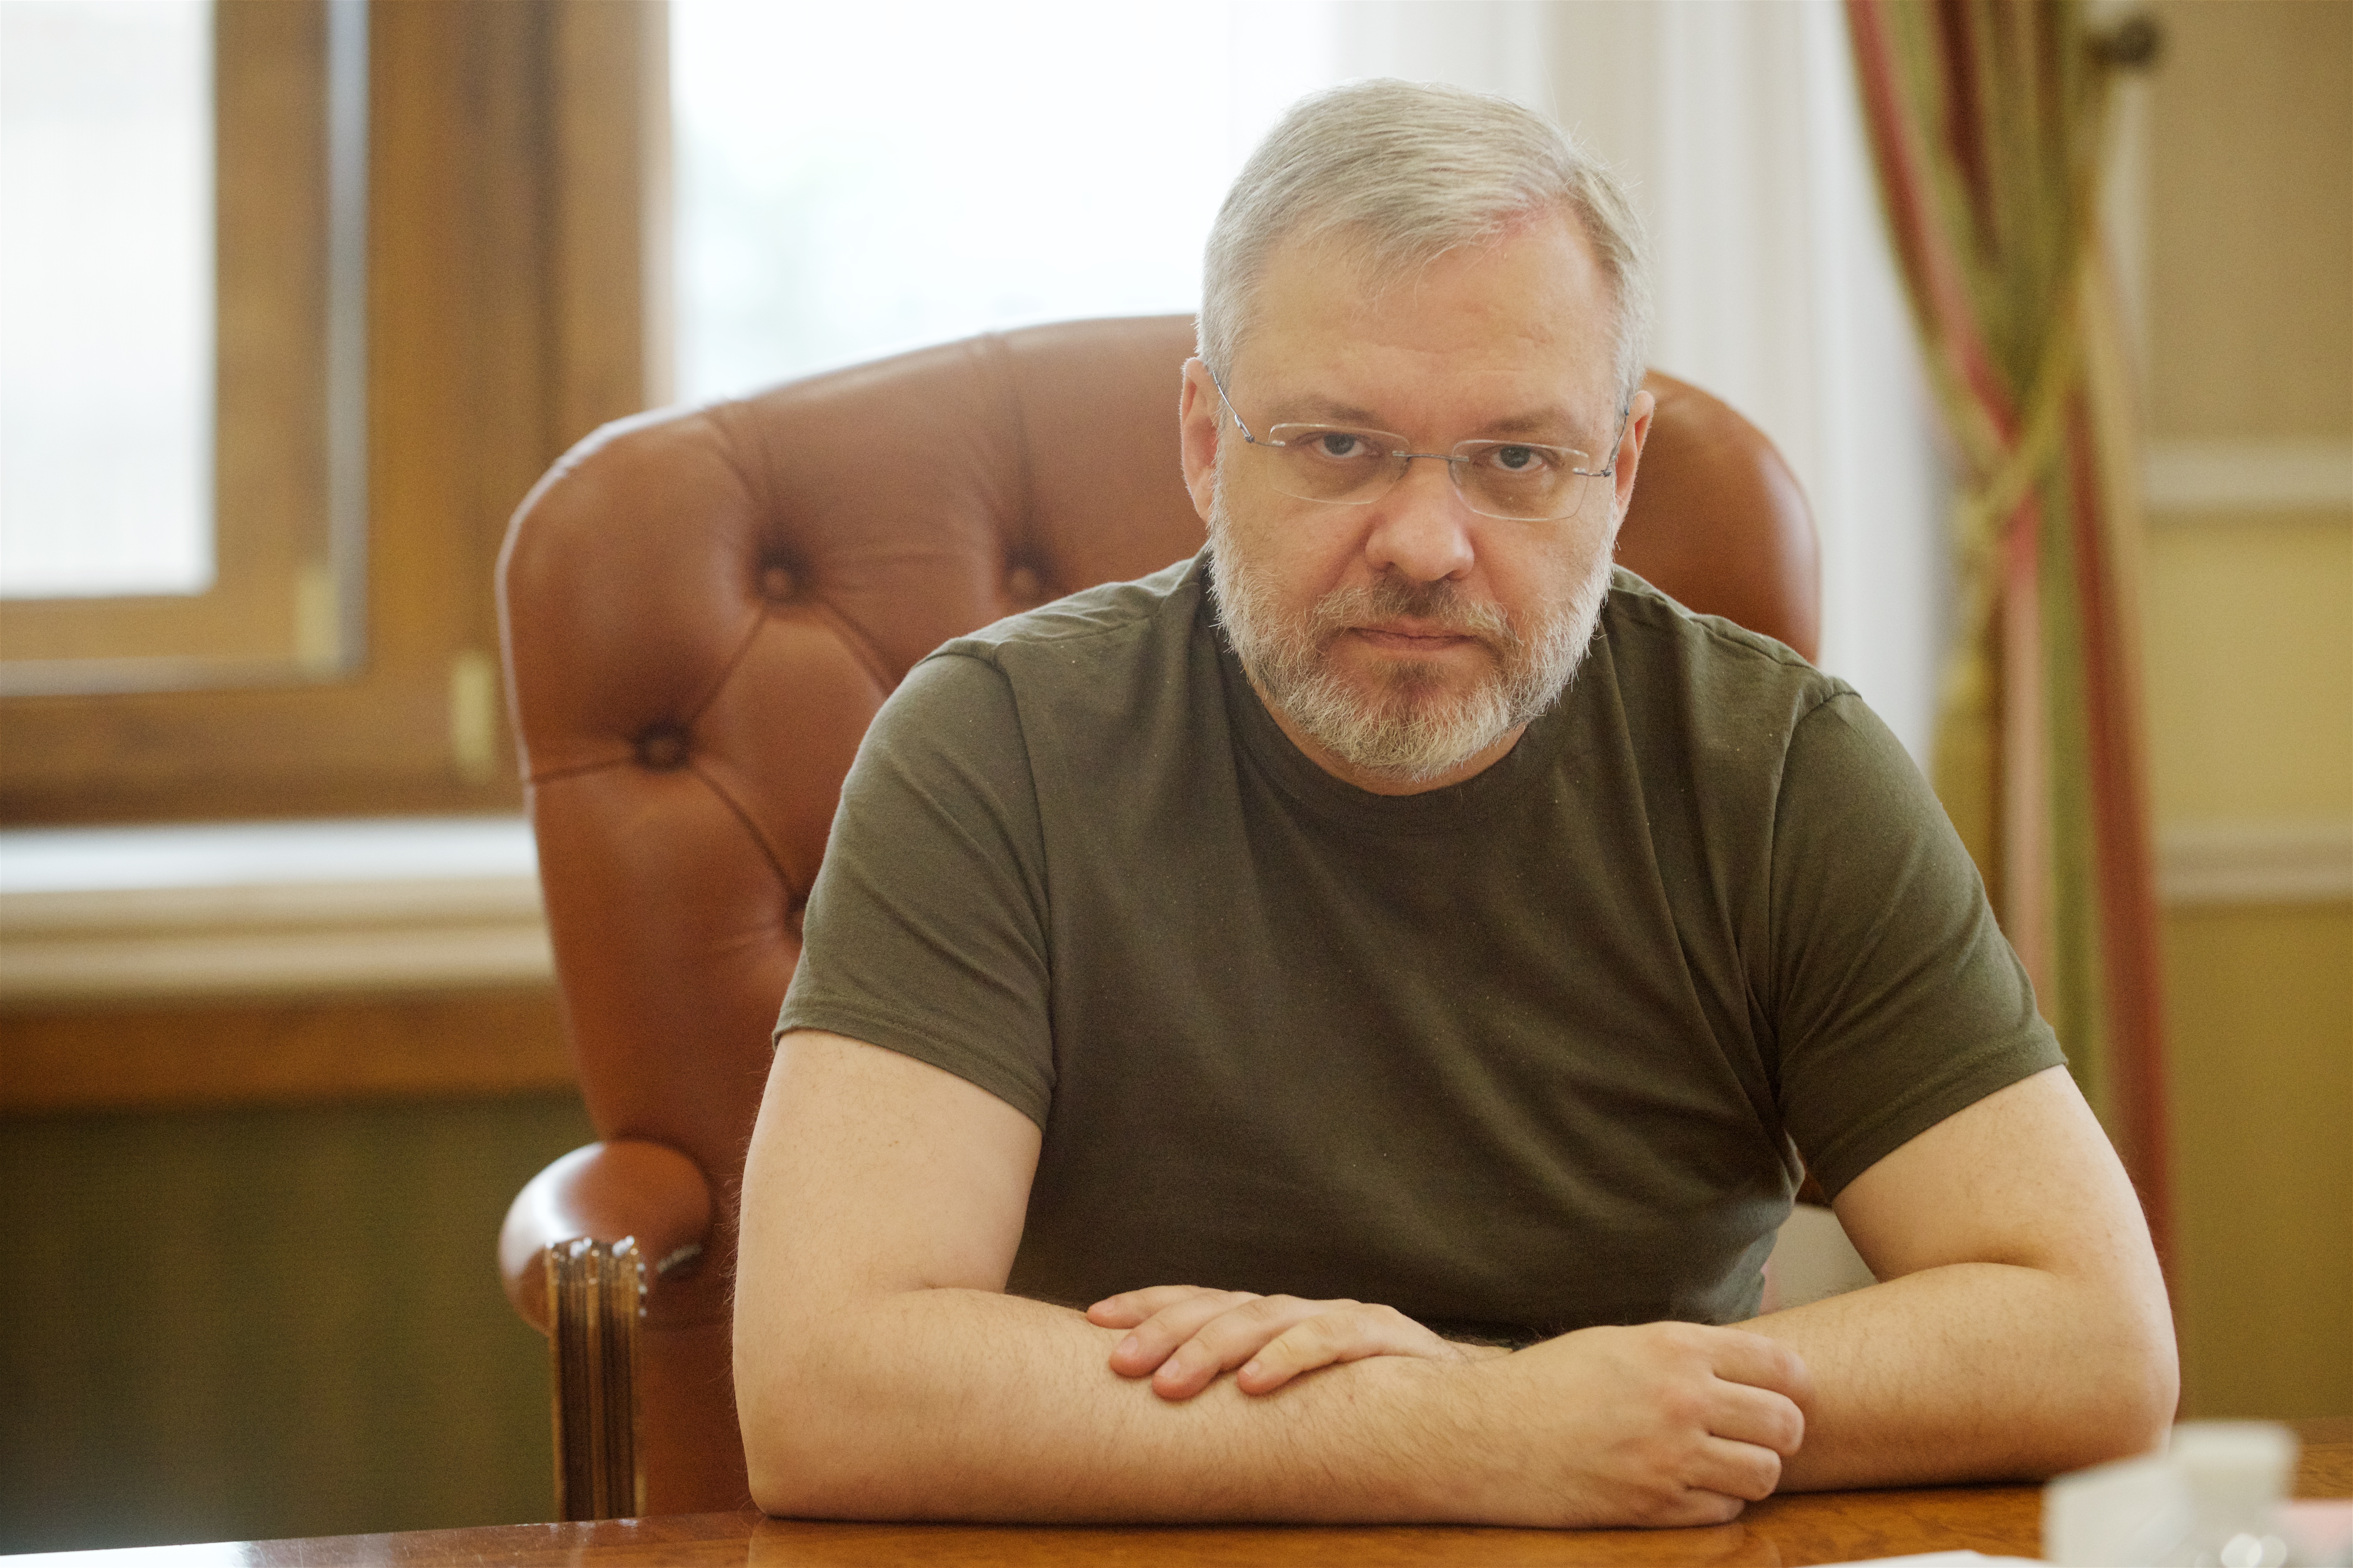 Галущенко наголосив на можливих труднощях з електрикою влітку та необхідності підготовки до складної зими